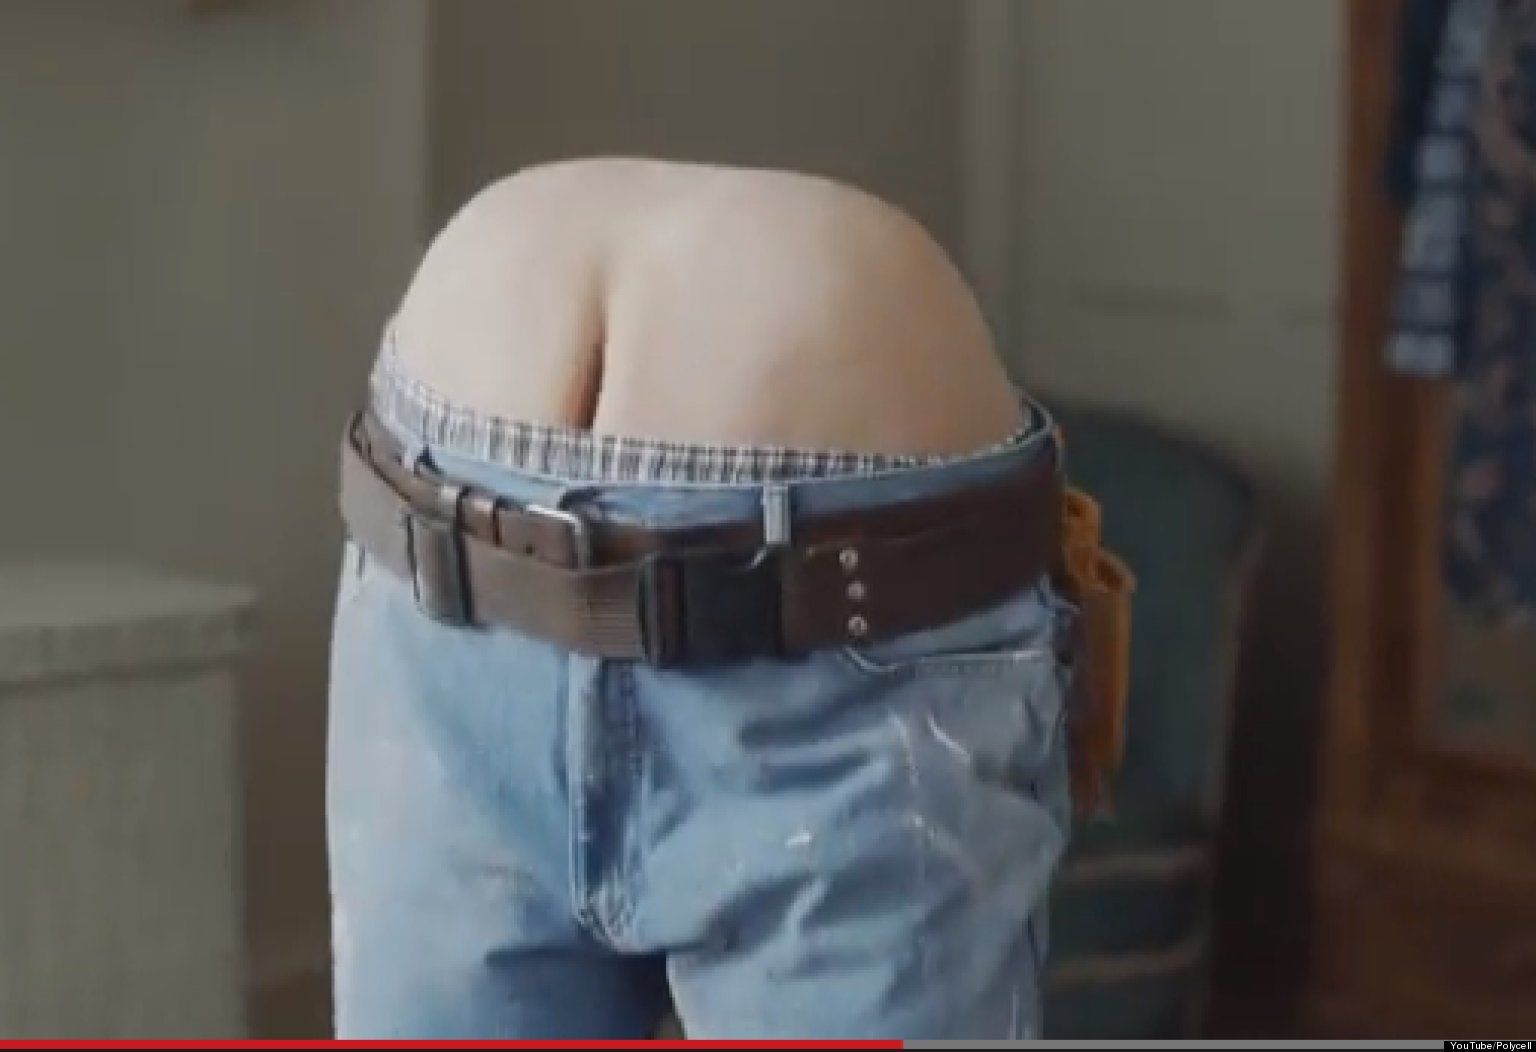 Ass crack or butt crack